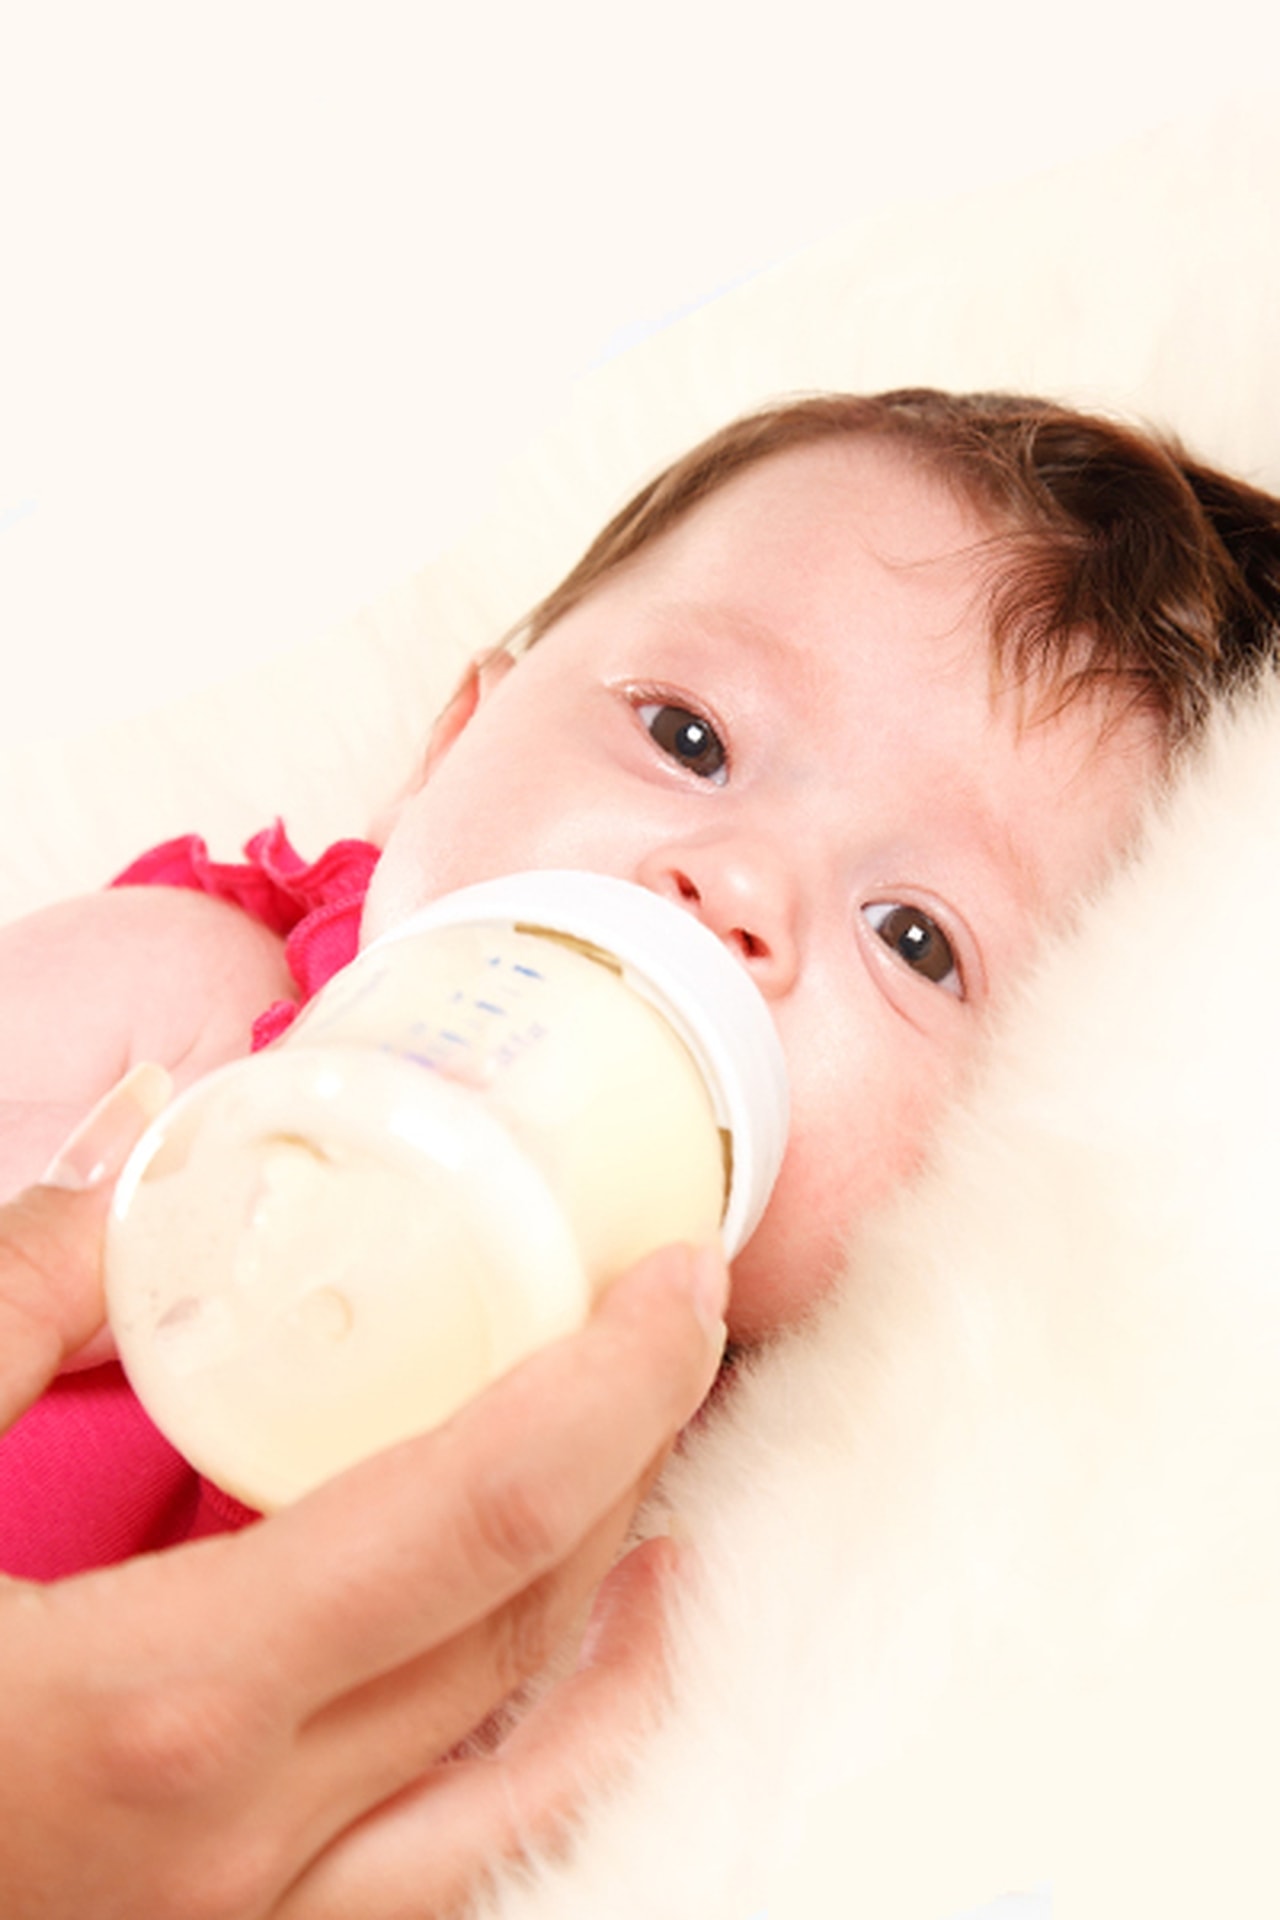 متى يجب تغيير زجاجة حليب طفلك وحلمات الرضاعة وكرسي الطفل؟